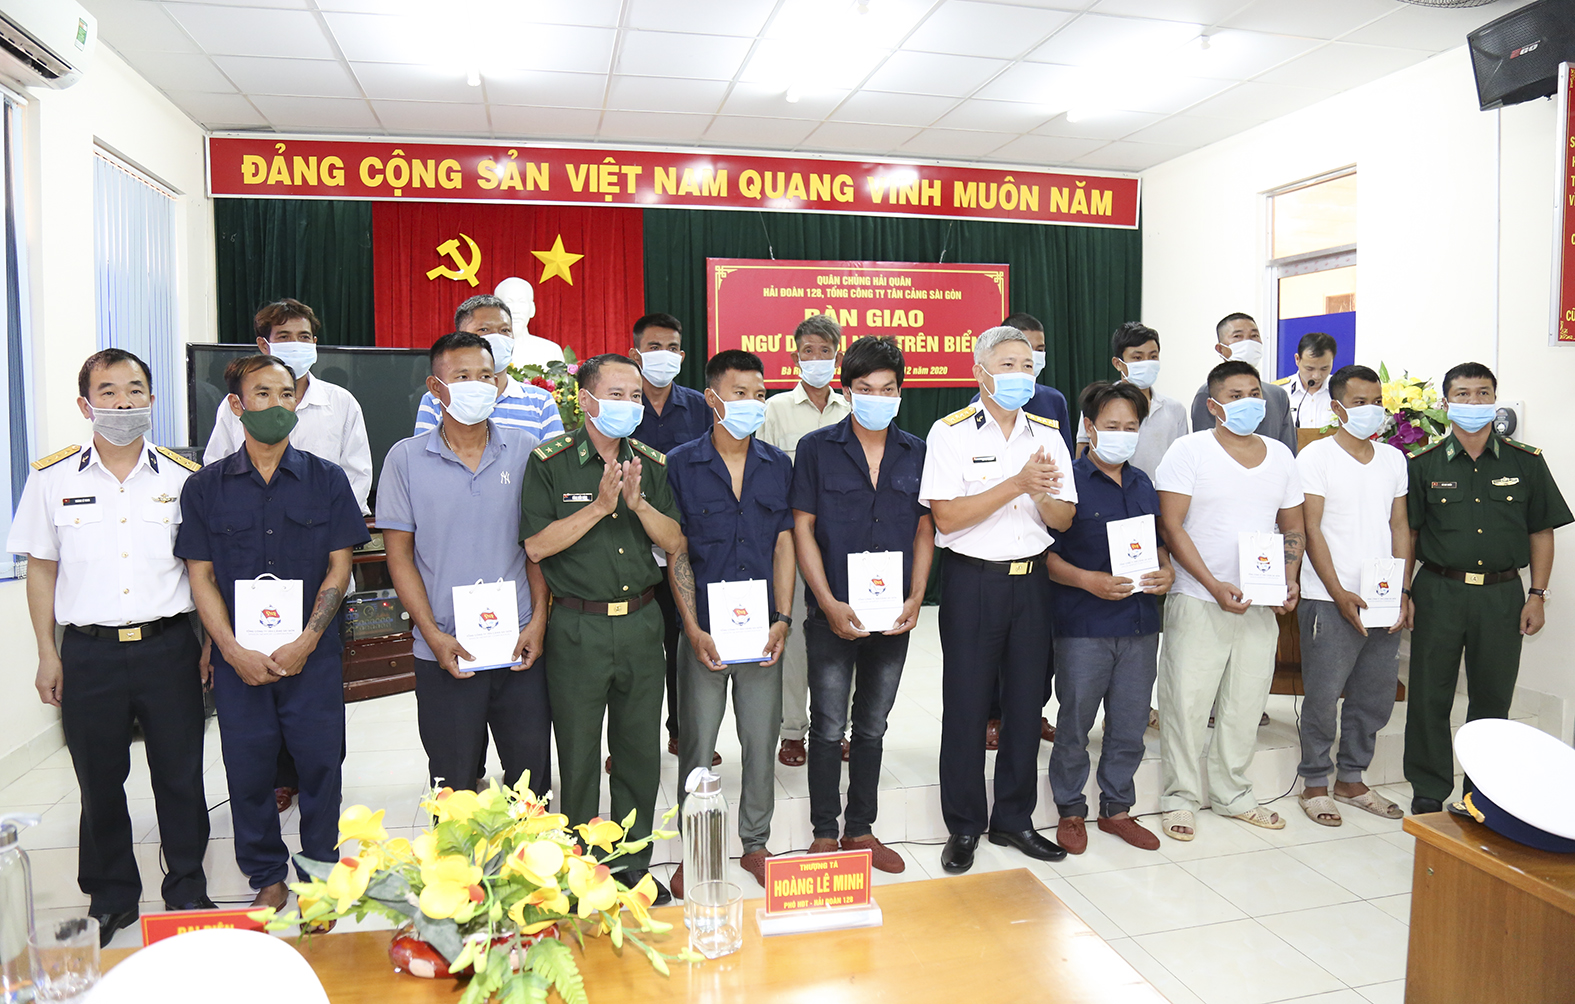 Đại diện Tổng công ty Tân cảng Sài Gòn trao quà cho các ngư dân